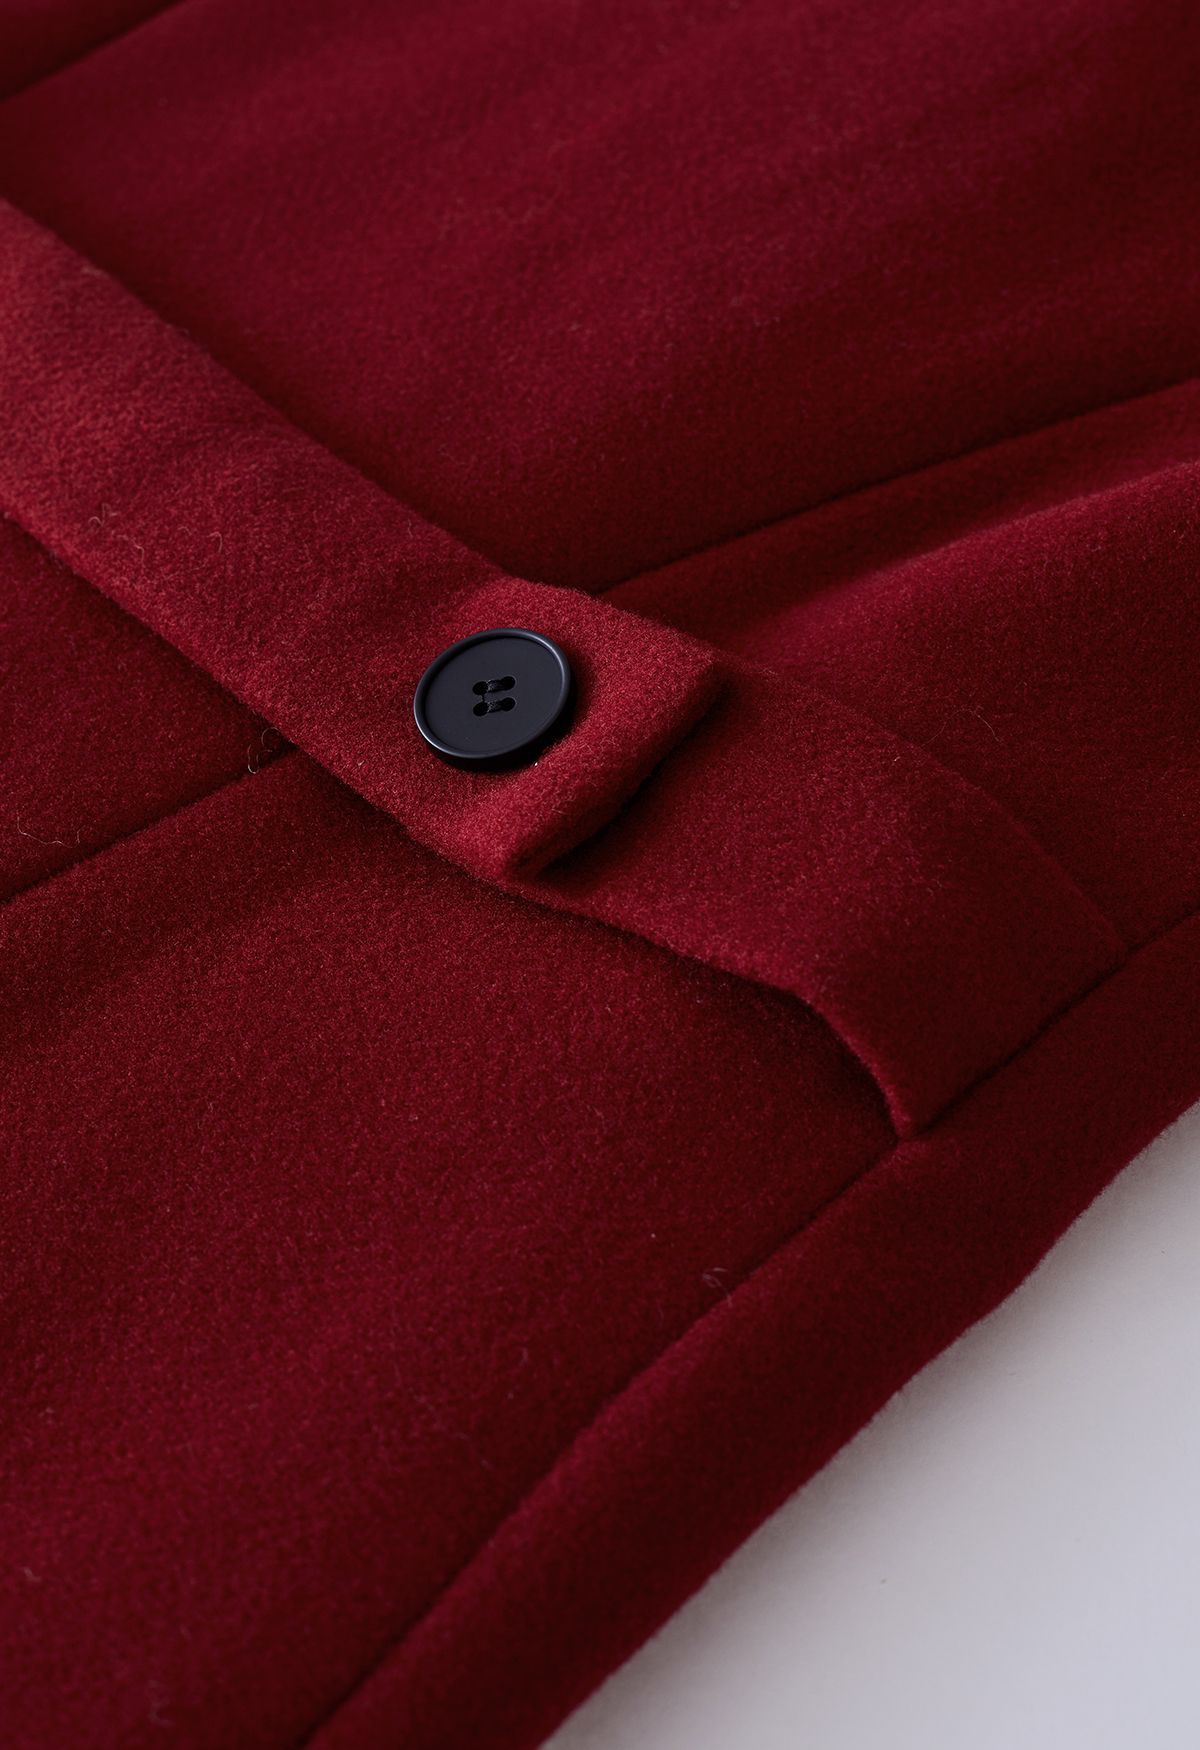 Zweireihiger, ausgestellter, langer Mantel mit breitem Revers in Rot